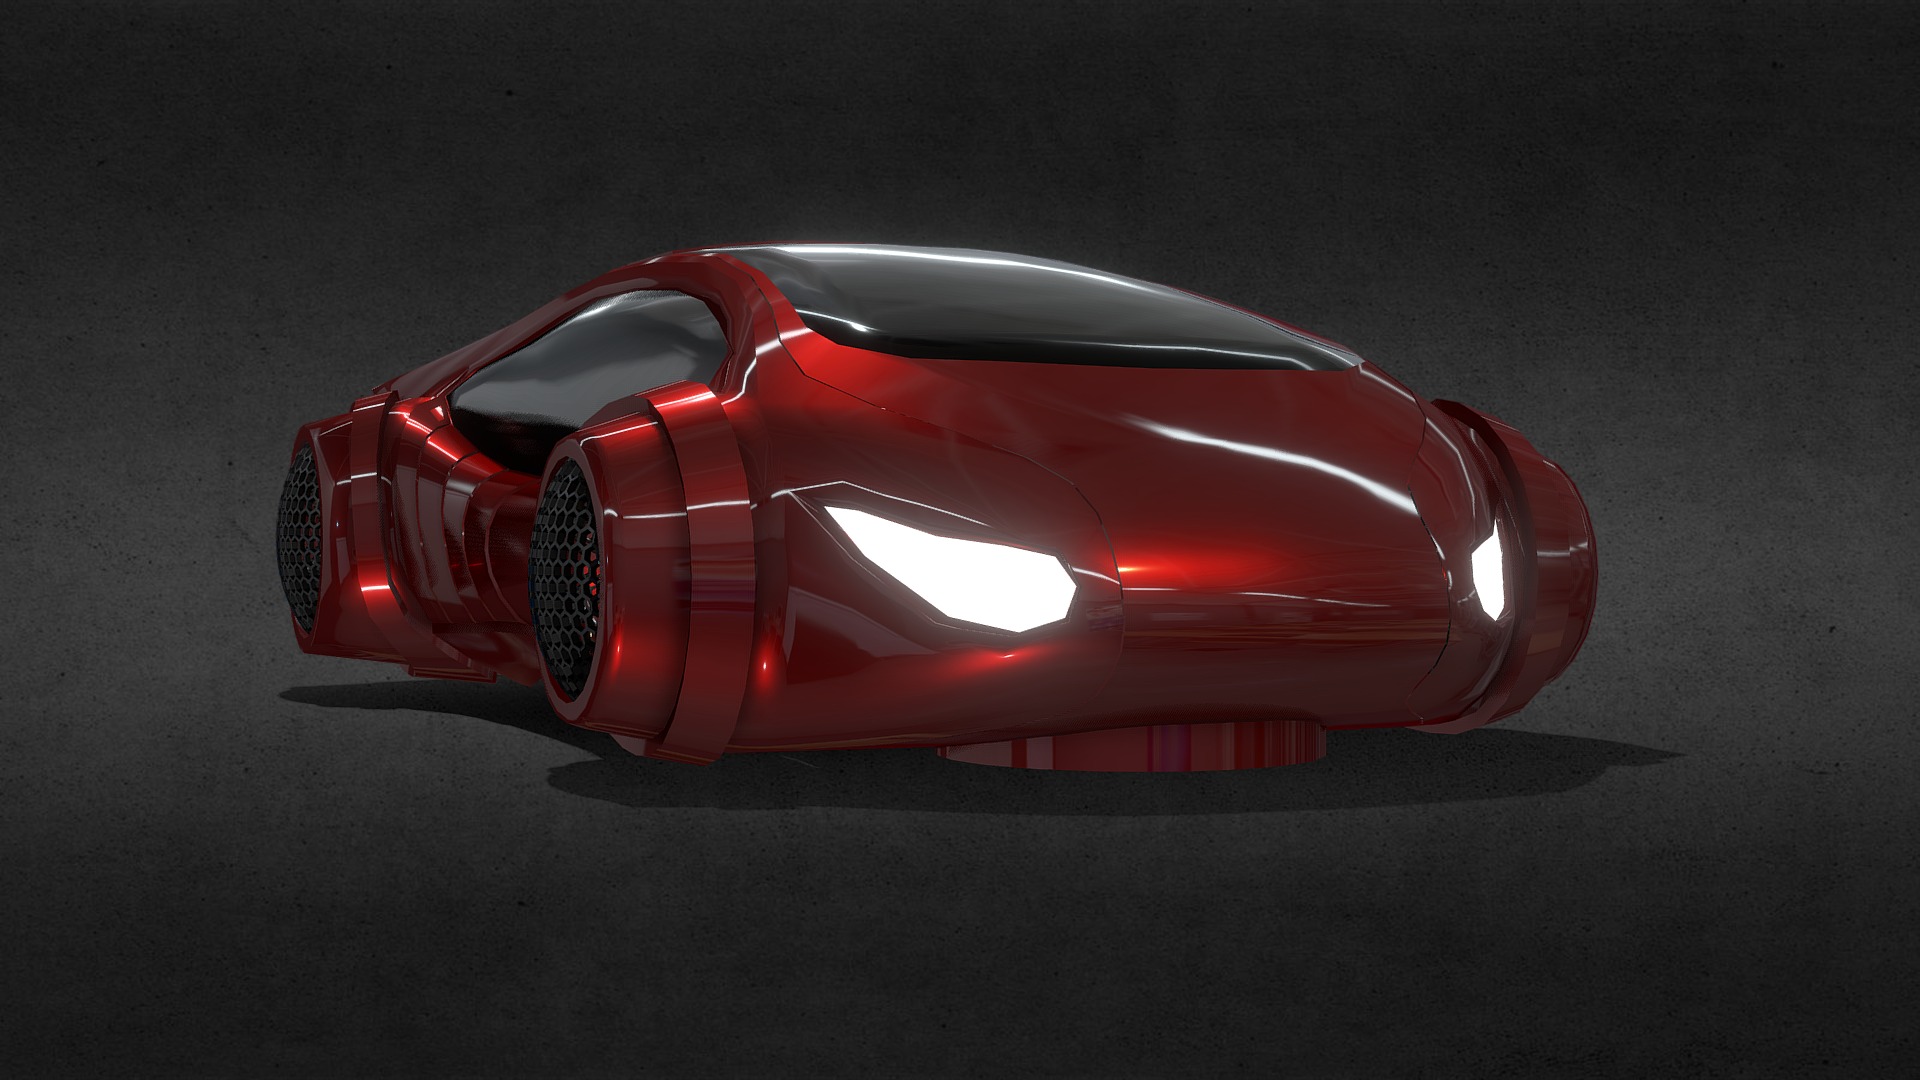 3D model Futuristic Car 2 - This is a 3D model of the Futuristic Car 2. The 3D model is about a red sports car.